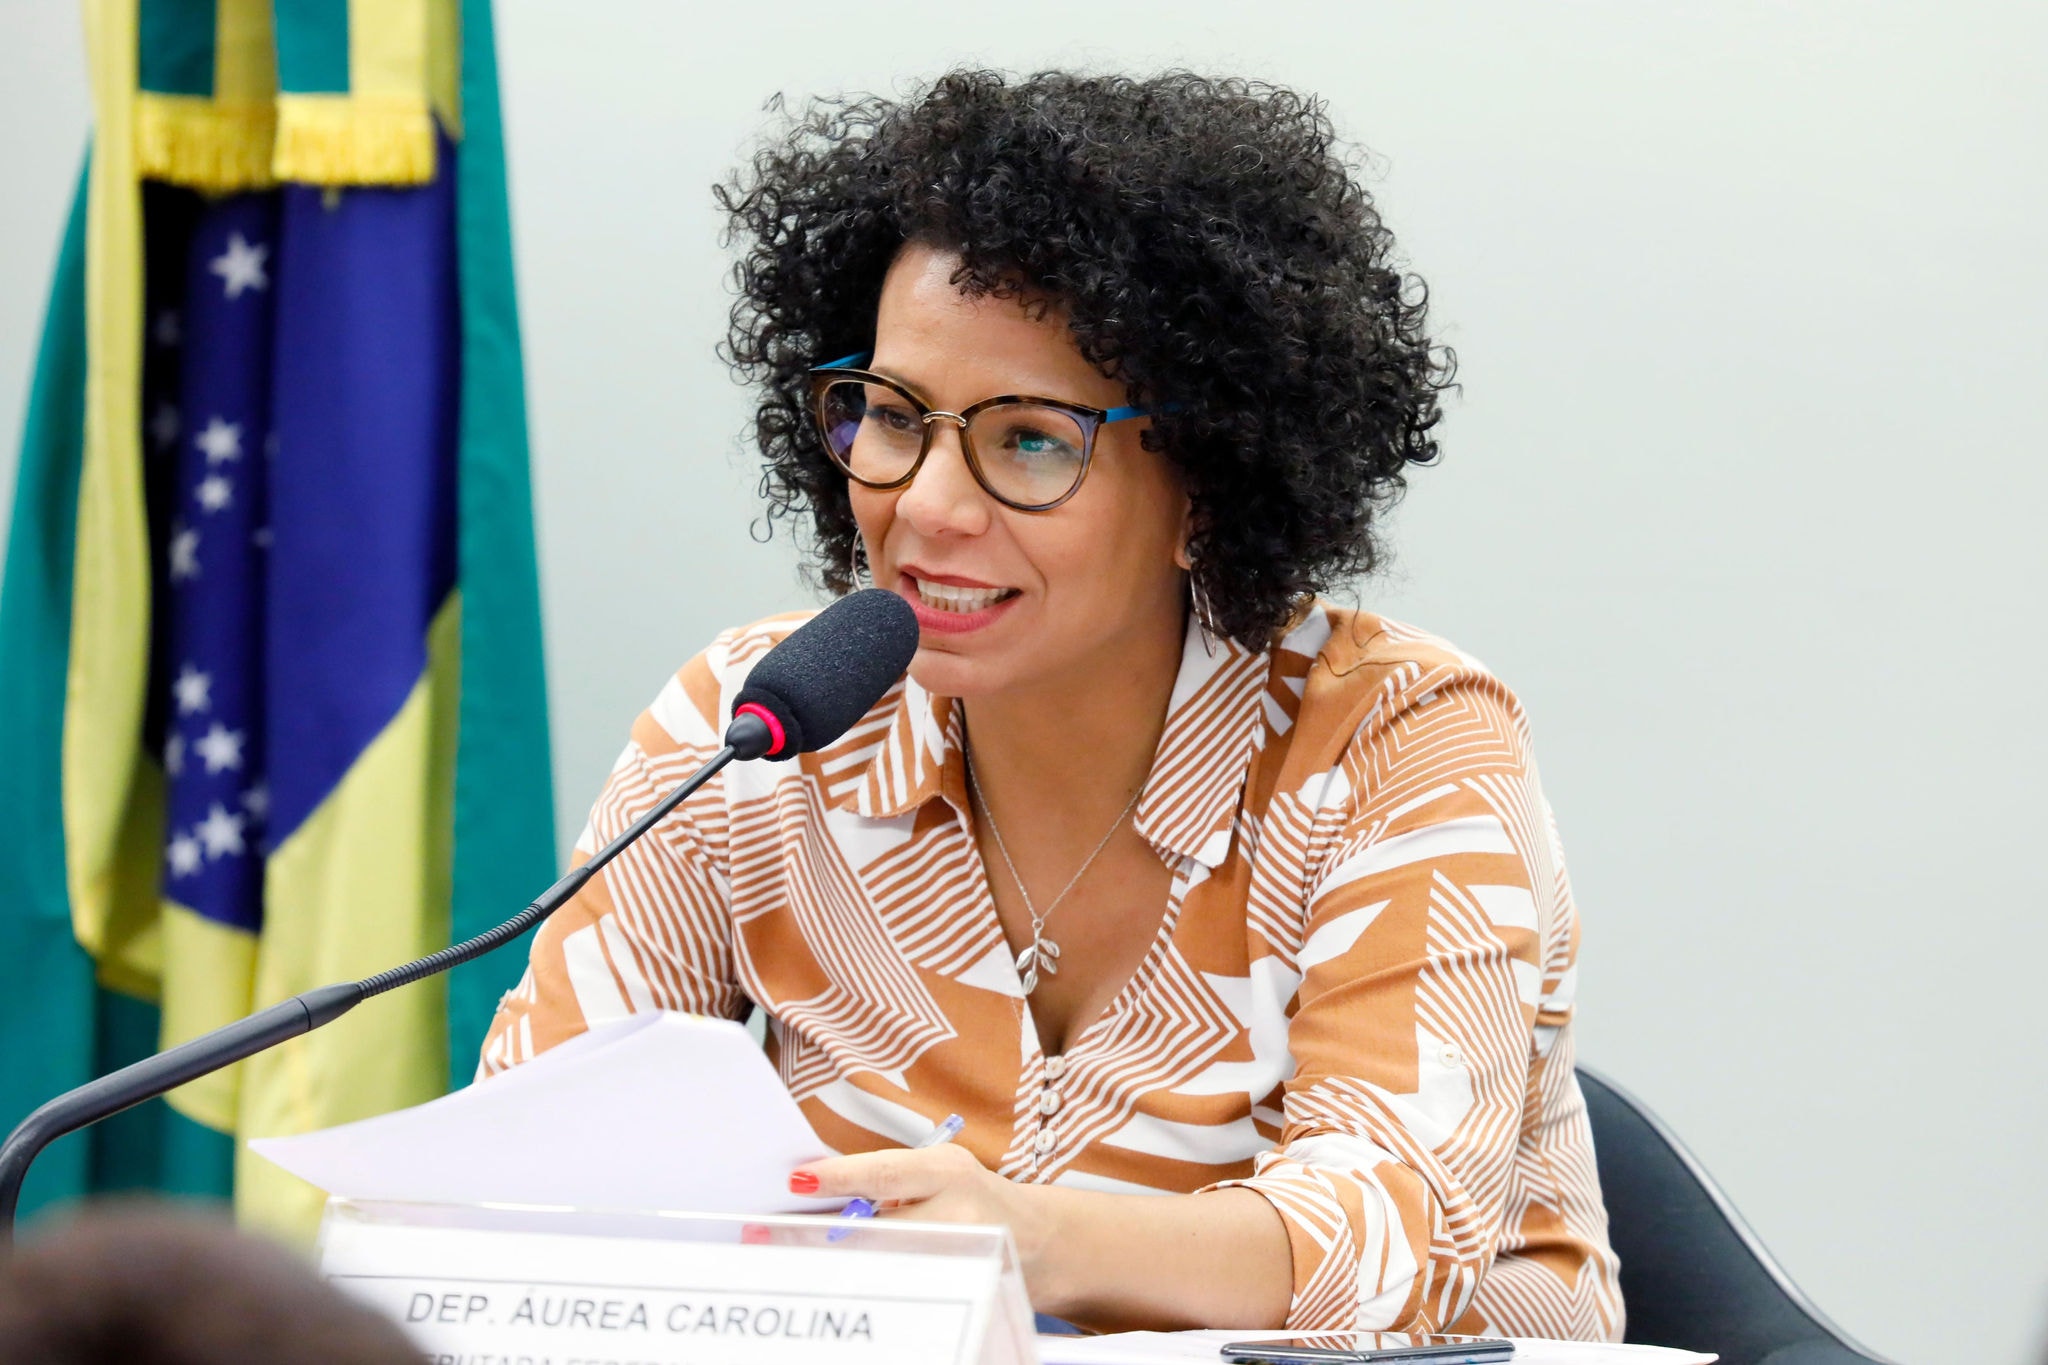 Áurea Carolina propõe programa de complementação da renda para população pobre em BH